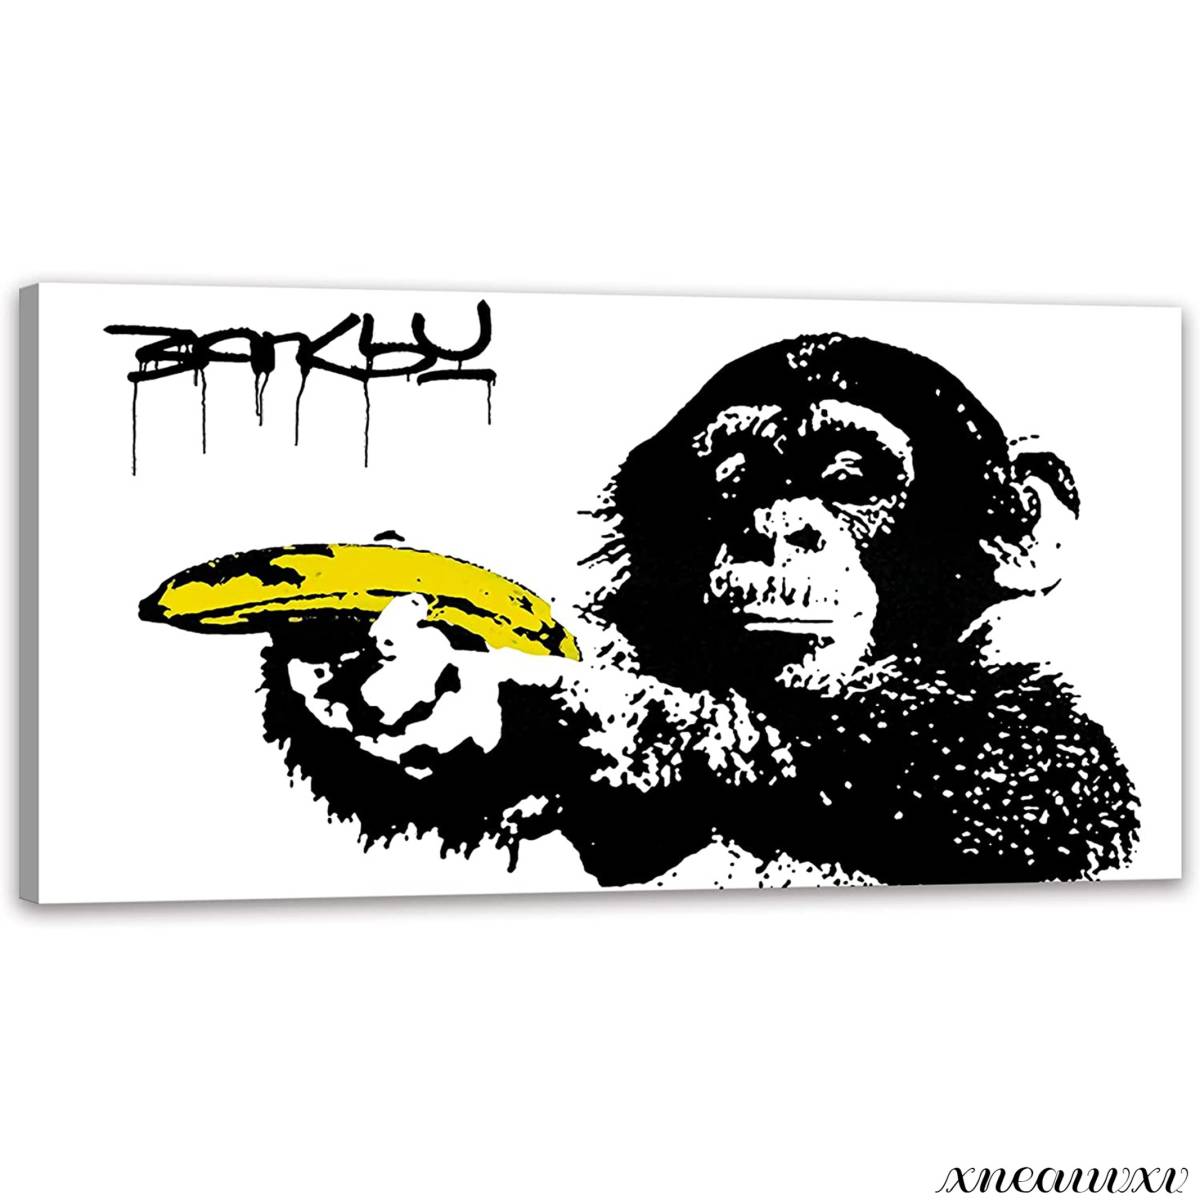 Banksy Grand panneau d’art Reproduction Décoration intérieure de la pièce Peinture sur toile Tenture murale Monochrome Simple Abstrait Chimpanzé moderne, ouvrages d'art, peinture, graphique